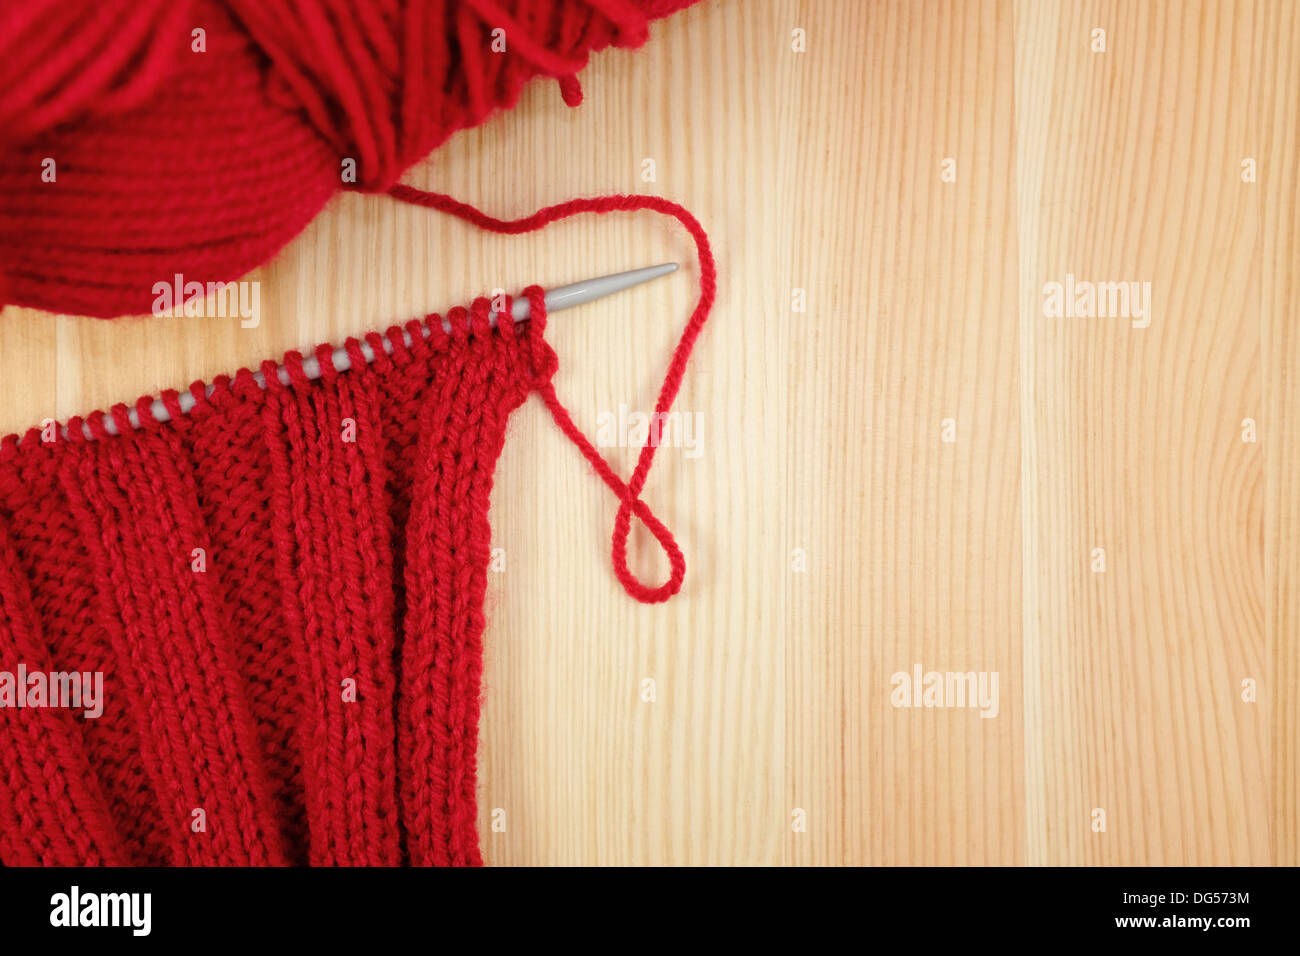 La nervure rouge croix sur l'aiguille à tricoter avec une balle de laine, sur bois Banque D'Images